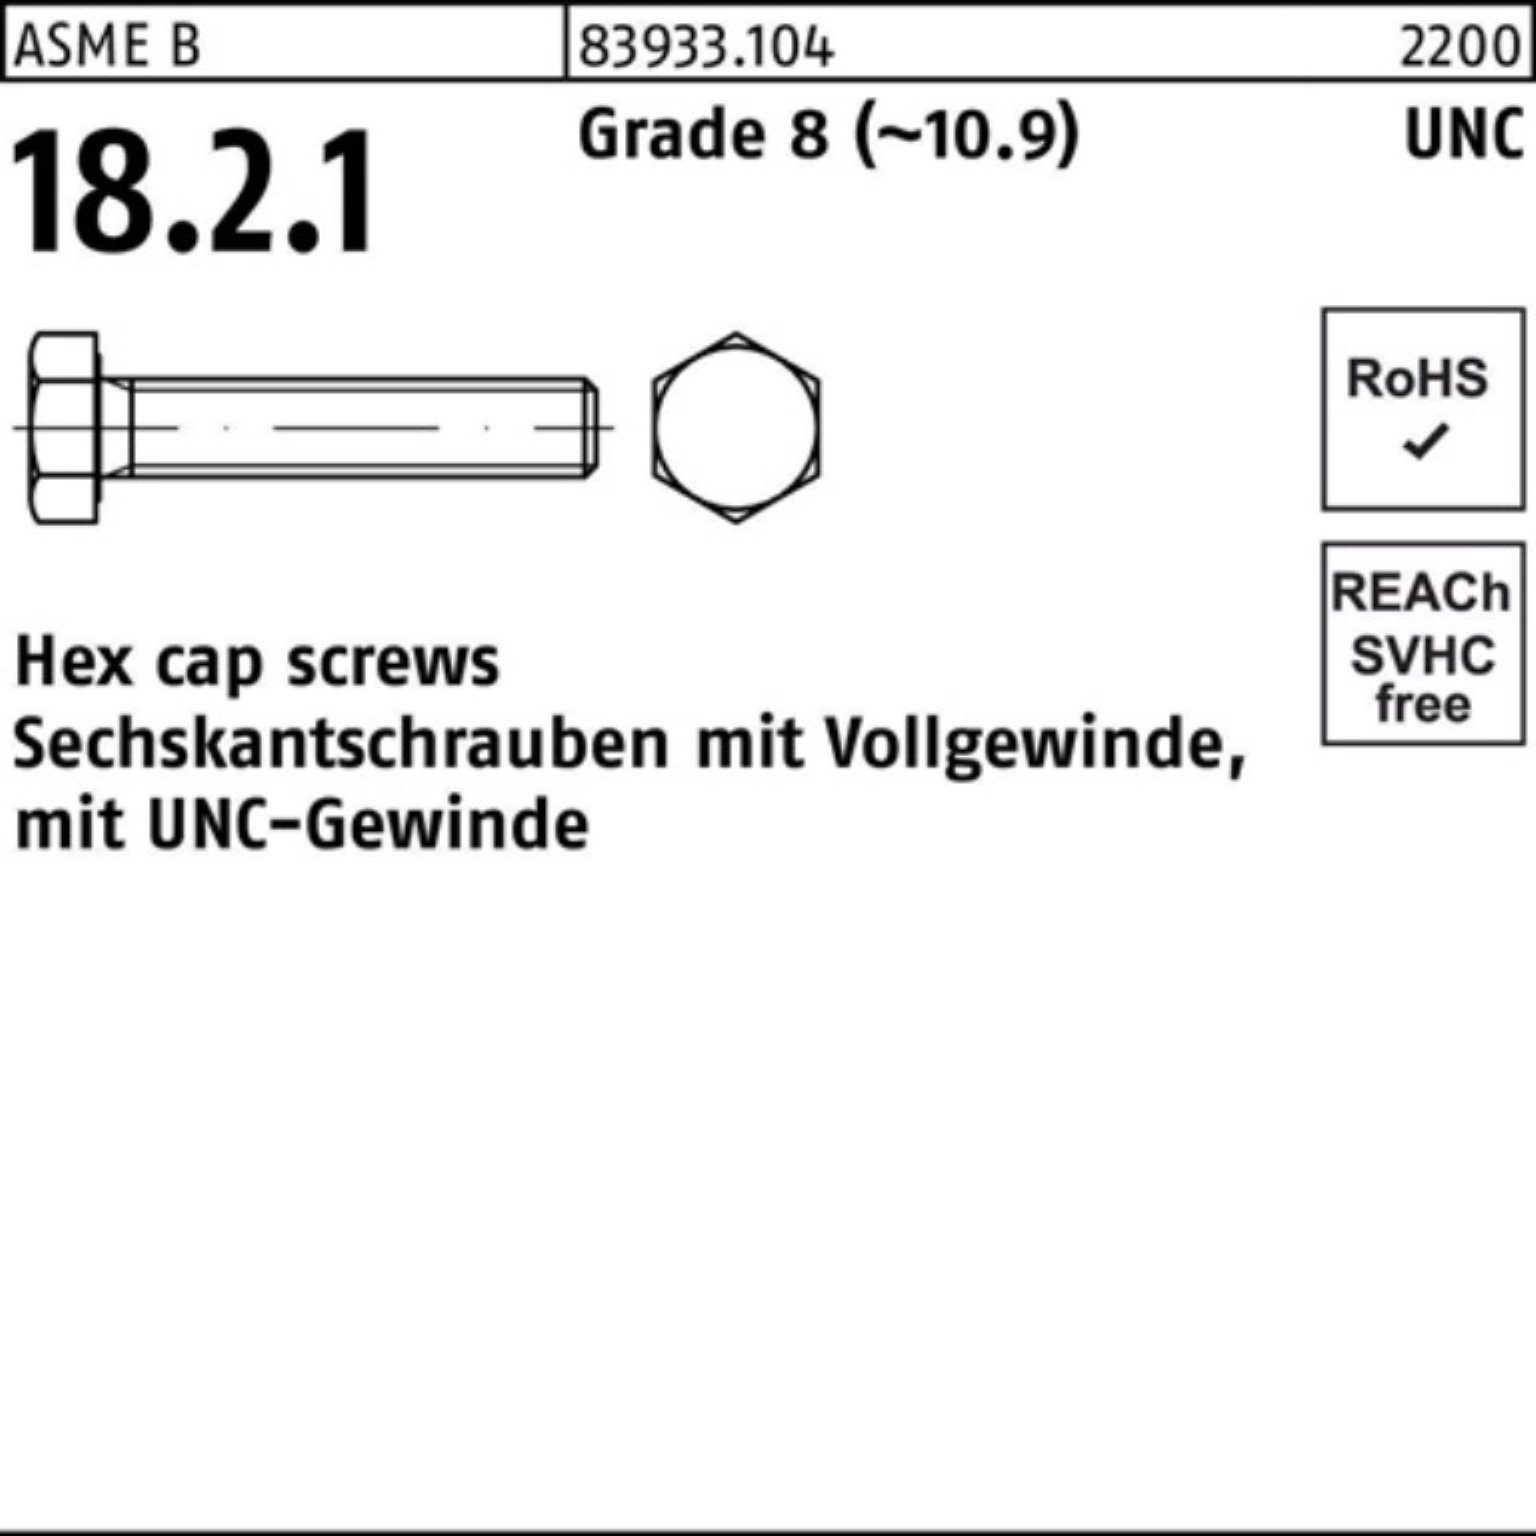 Reyher Sechskantschraube 100er Pack Sechskantschraube R 83933 UNC-Gewinde VG 1/2x 3/4 Grade 8